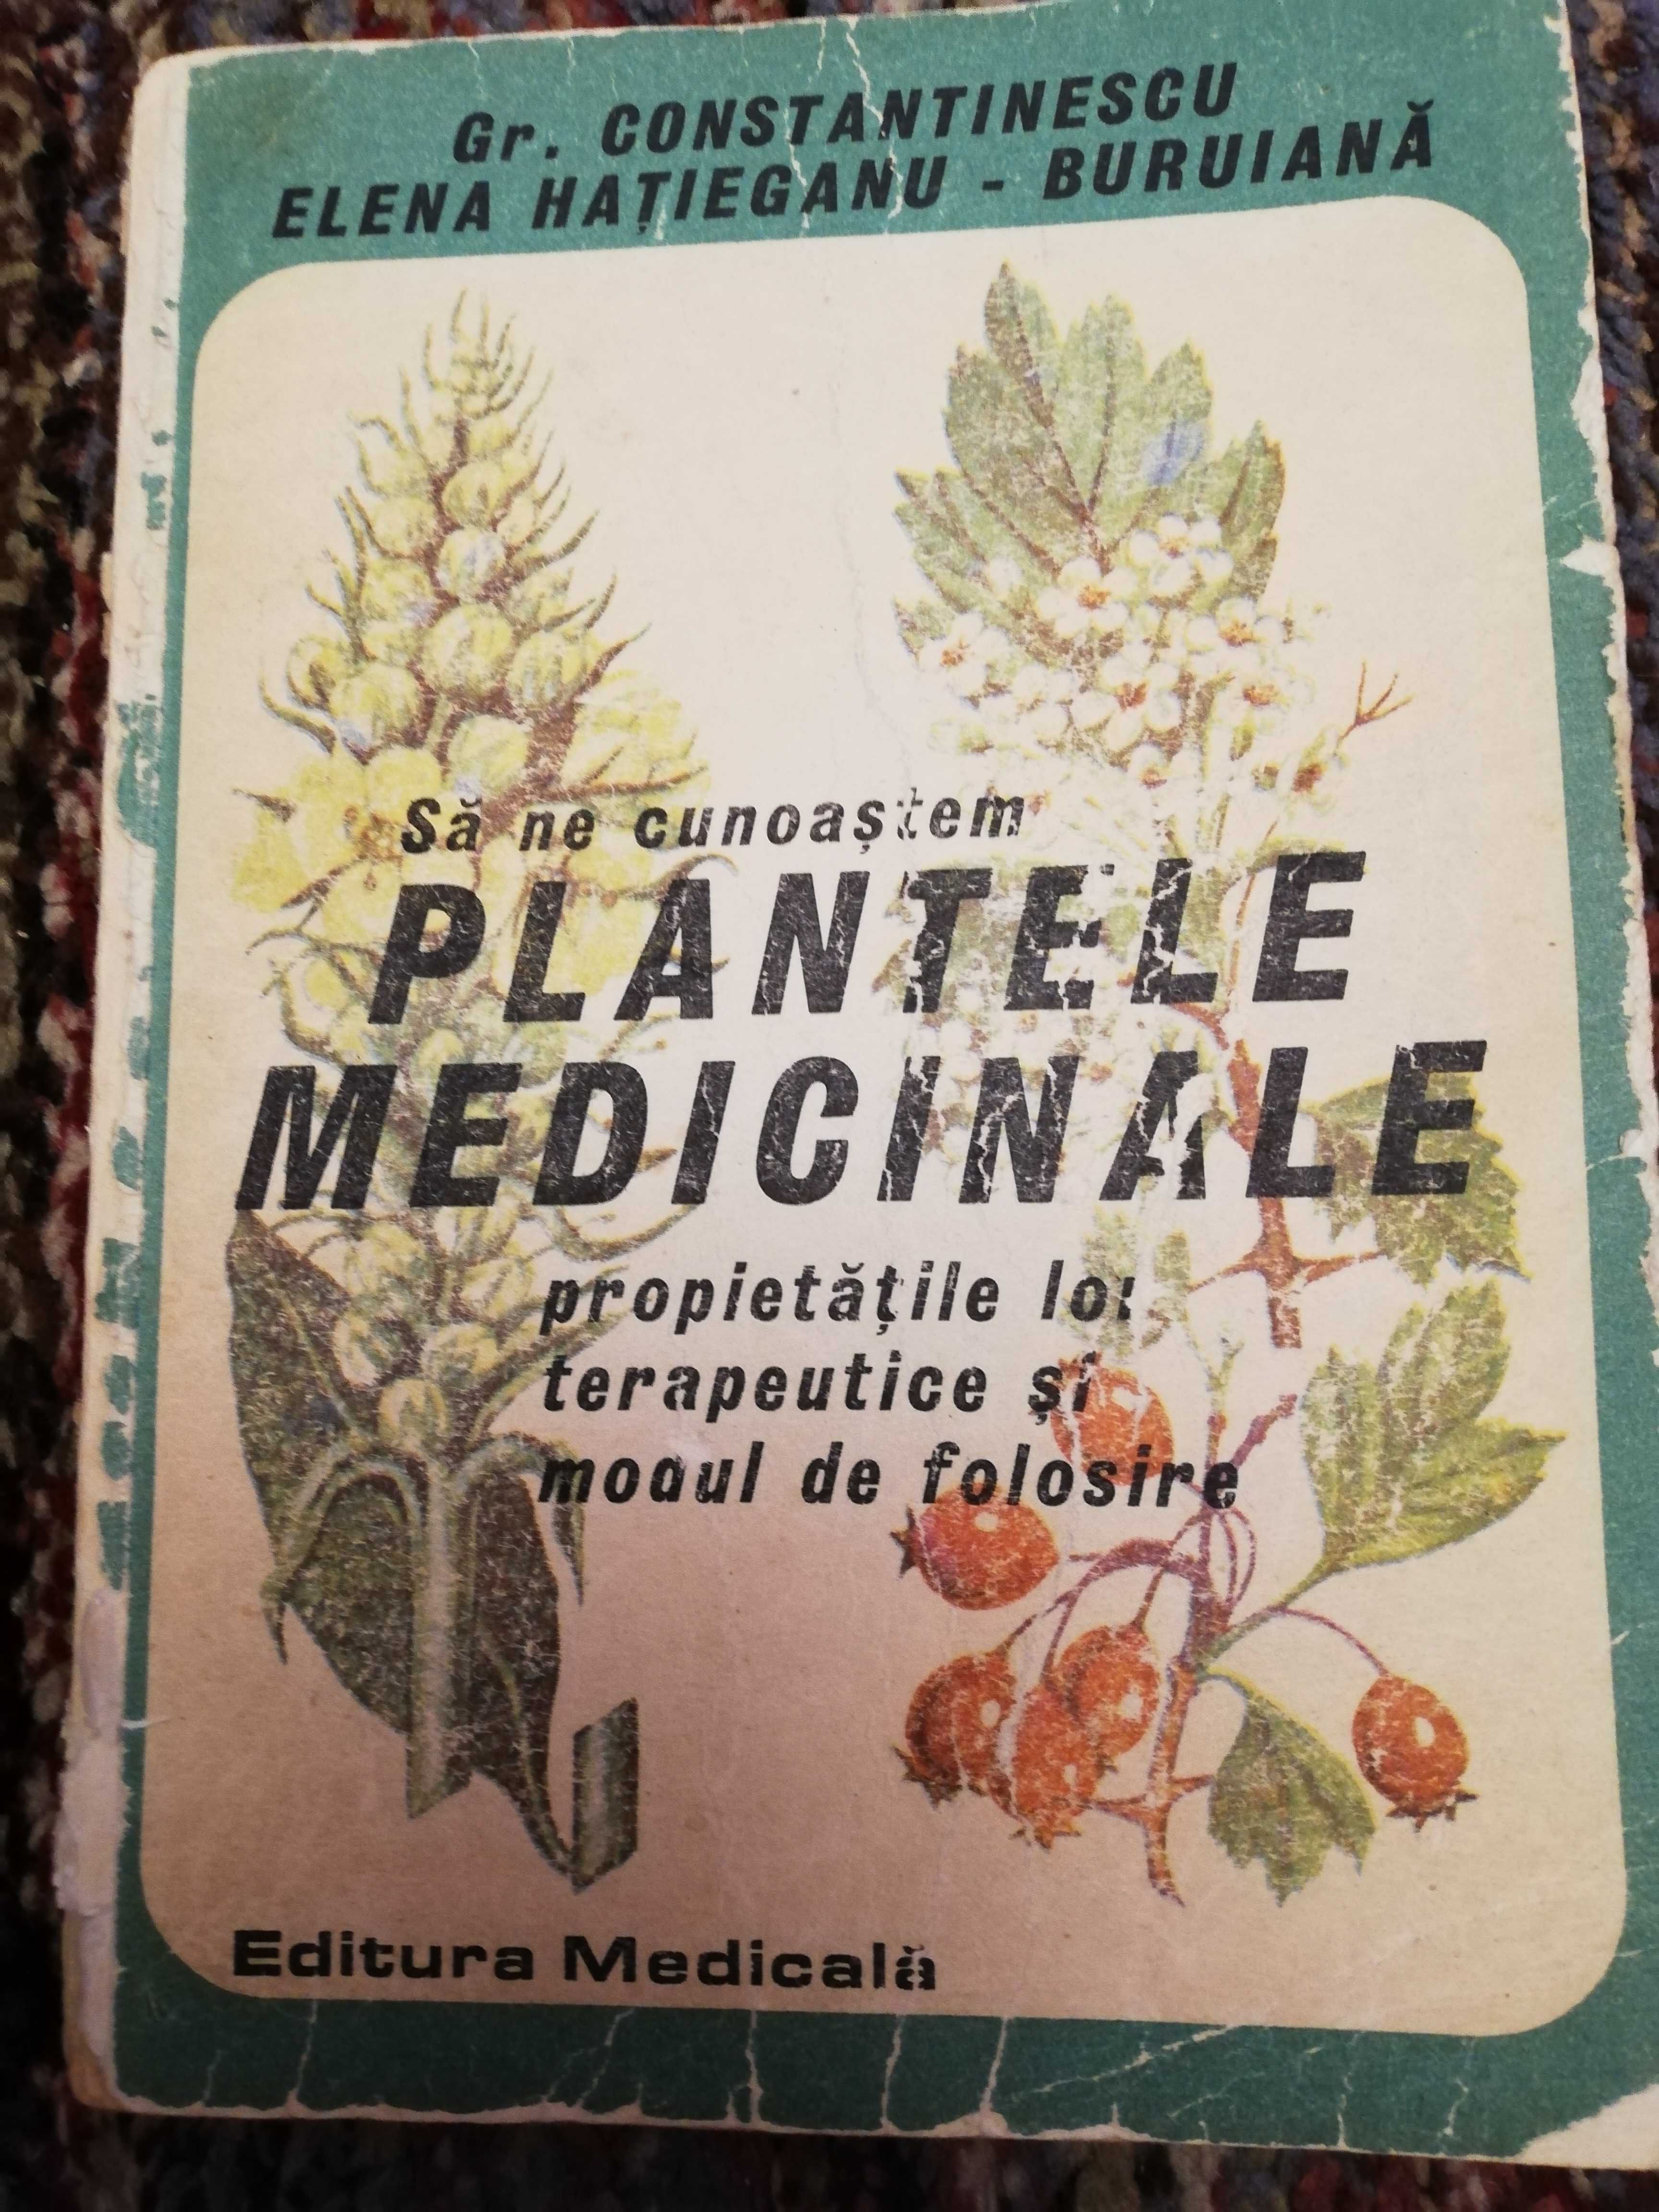 Sa ne cunoastem plantele medicinale - proprietatile lor terapeutice